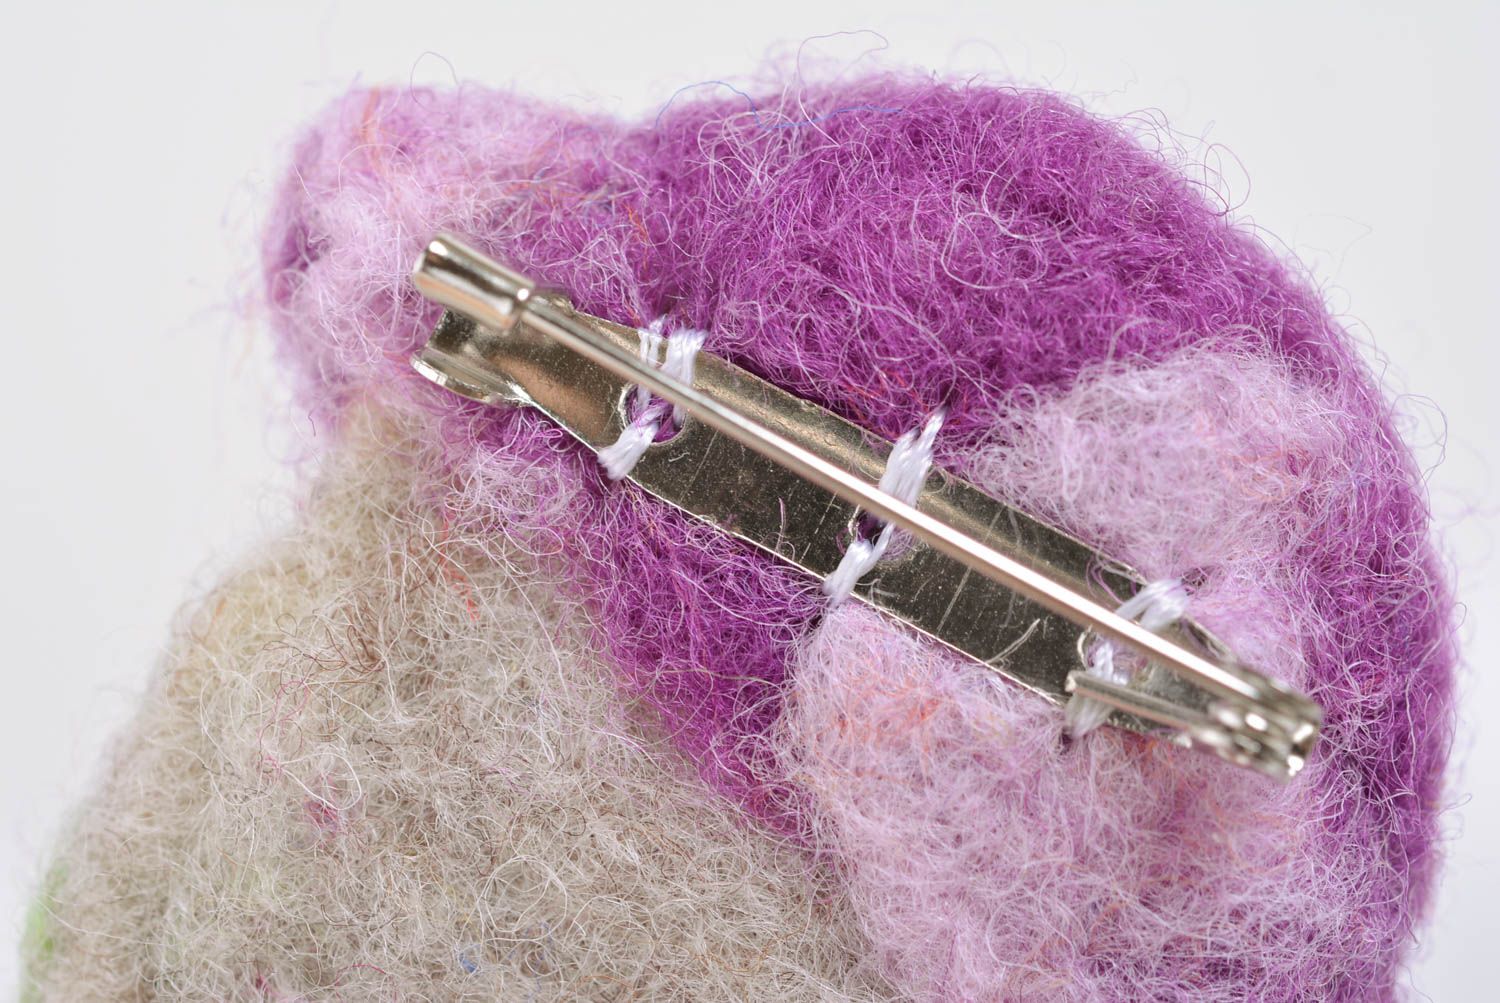 Небольшая брошка в технике валяния из шерсти домик фиолетовый аксессуар хенд мейд фото 5